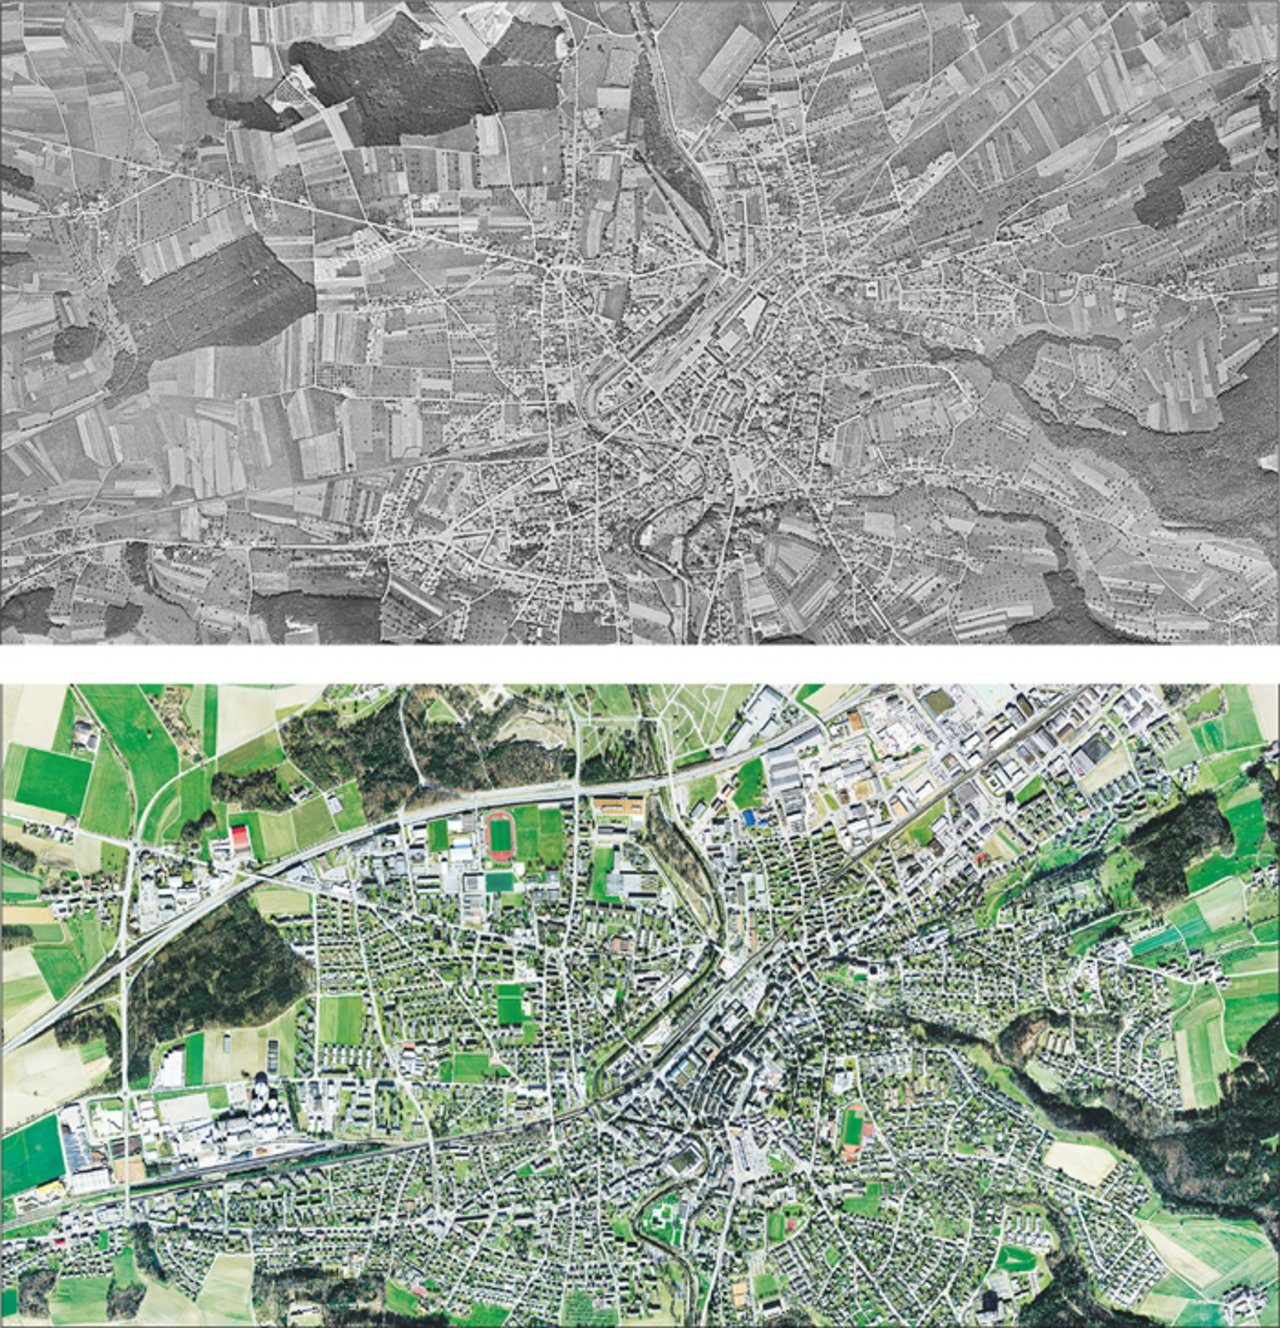 Frauenfeld 1946 und heute: Amerikanische Luftaufnahmen zeigen, wie hart die Zivilisation in die Kulturlandschaft eingreift. Ihr Dorf finden Sie unter www.swisstopo.admin.ch. (Bild Swisstopo)